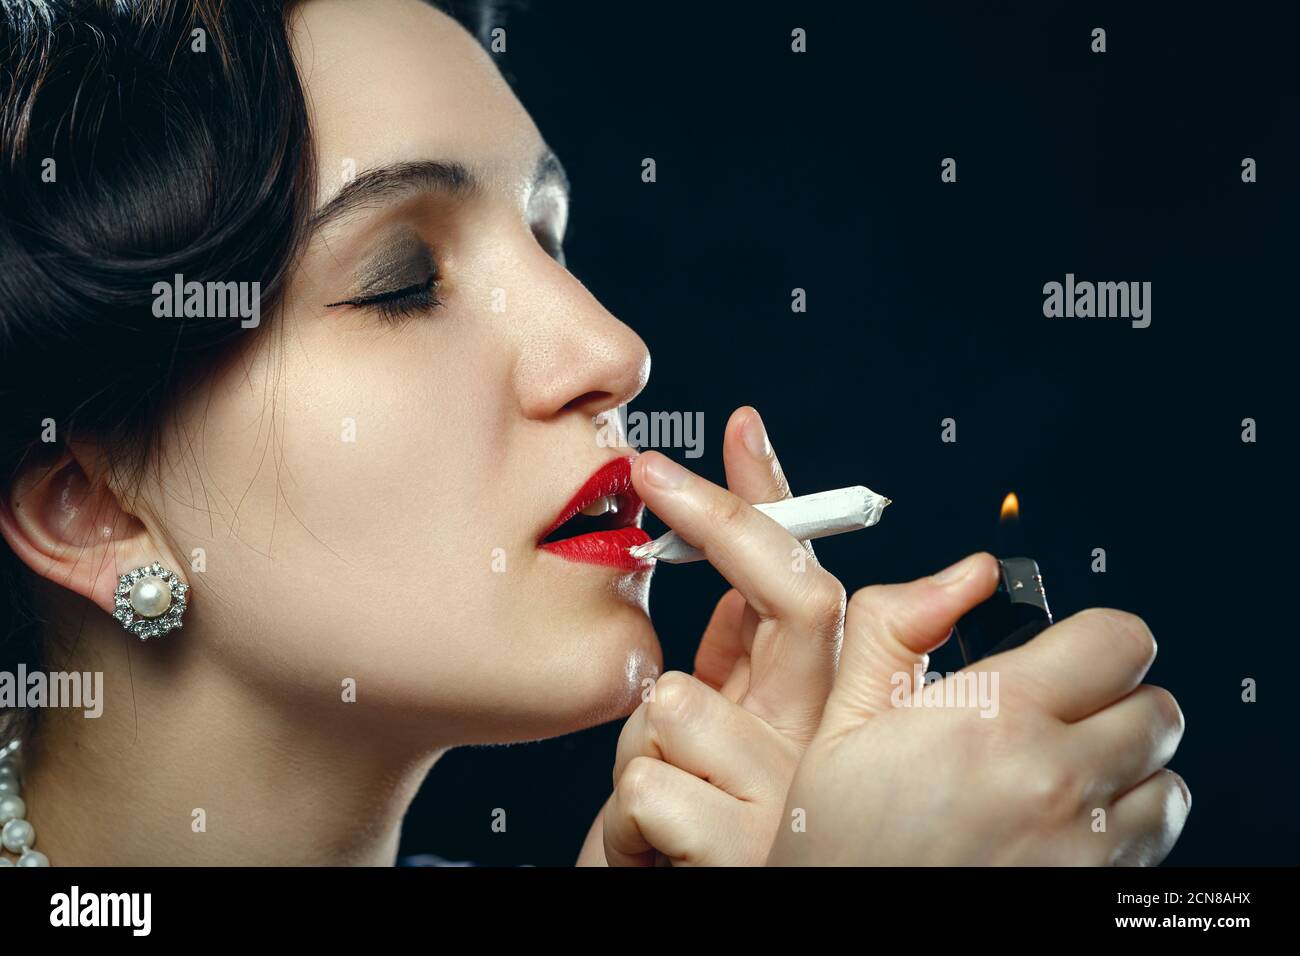 woman smoking joint Stock Photo - Alamy